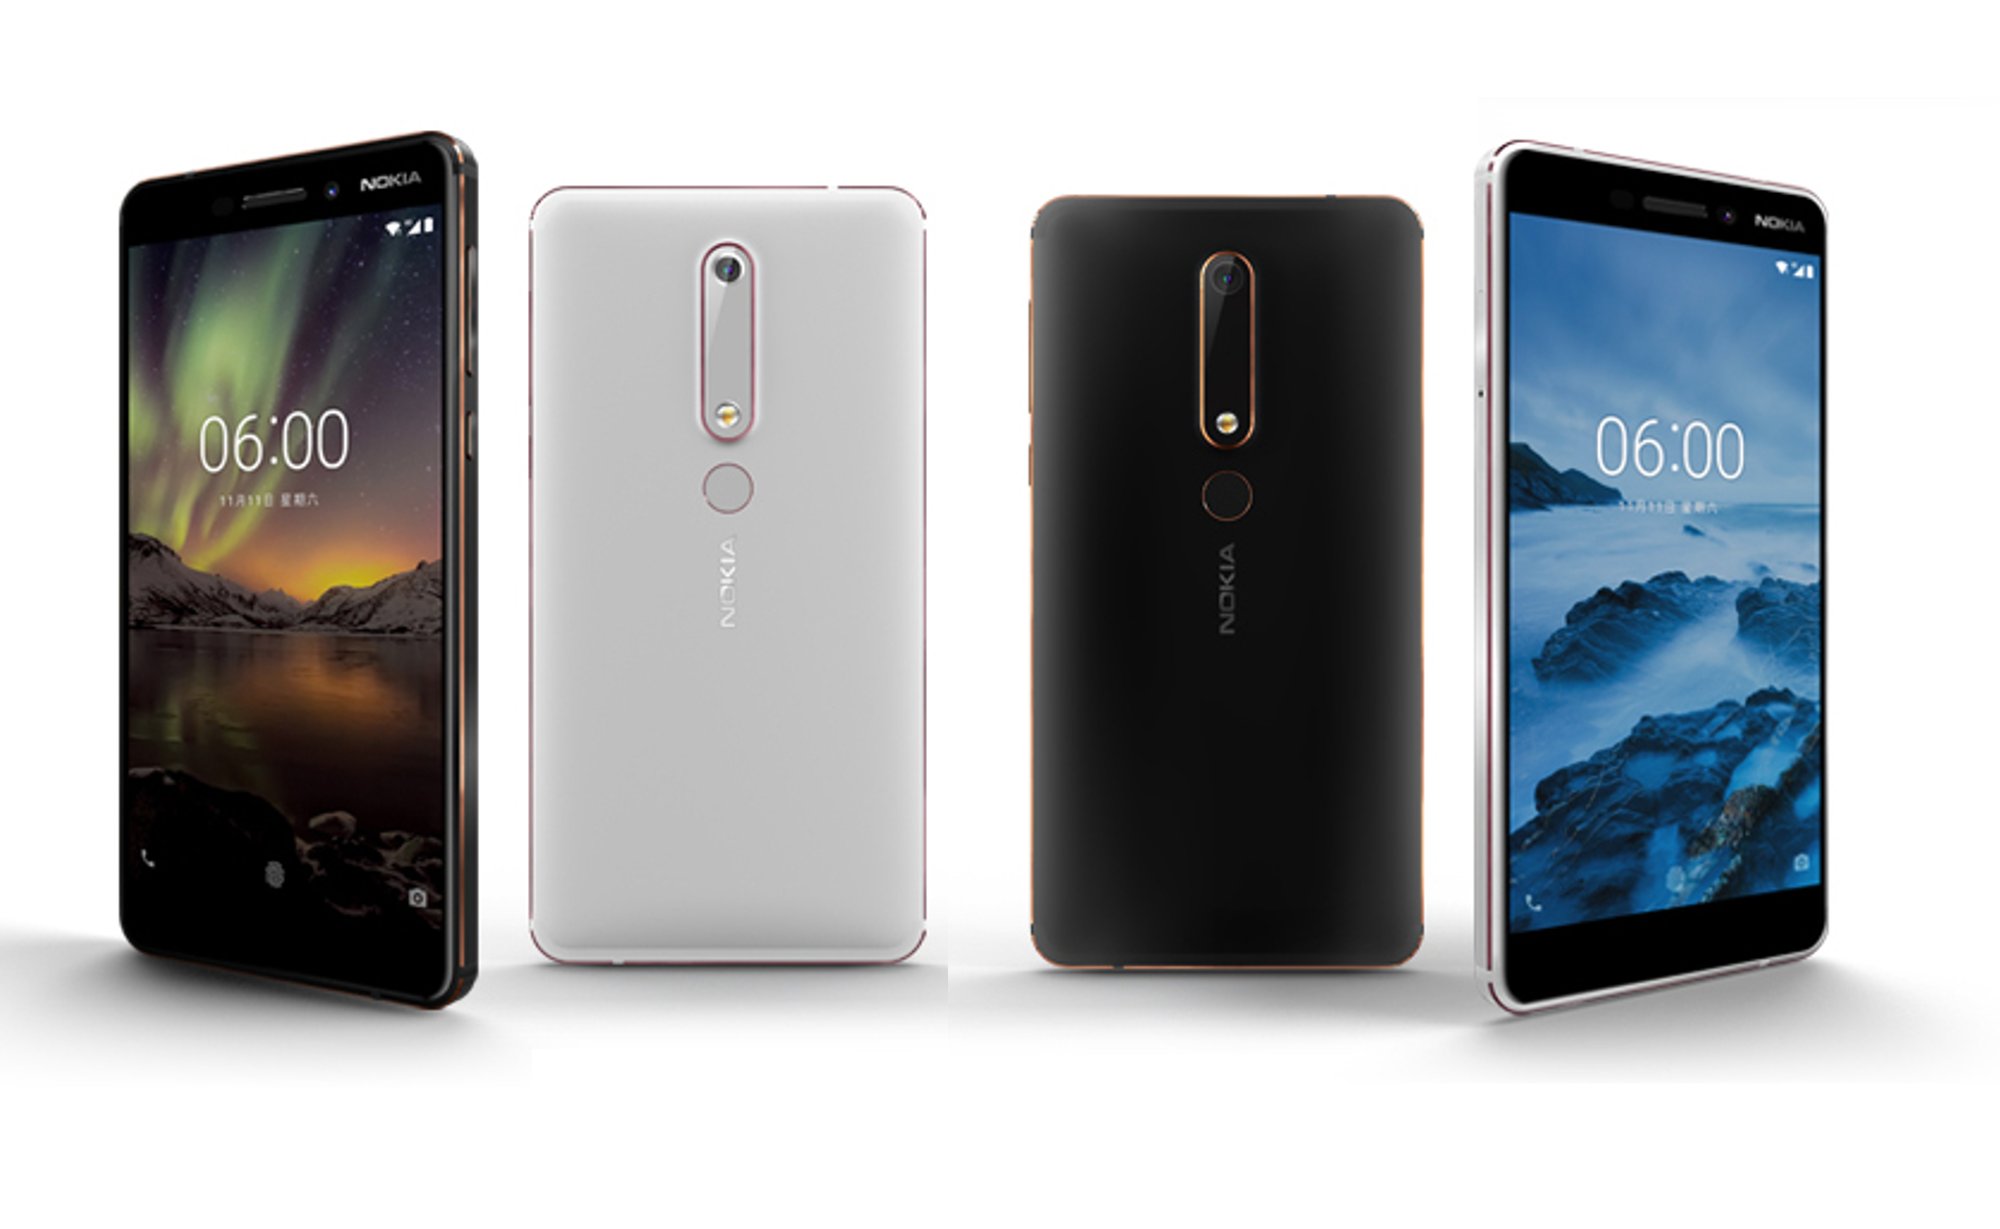 銷售報捷：全新 Nokia 6（第二代）榮獲蘇寧手機商城當日同價位銷售冠軍；開賣 12分鐘突破萬部銷量！ 2